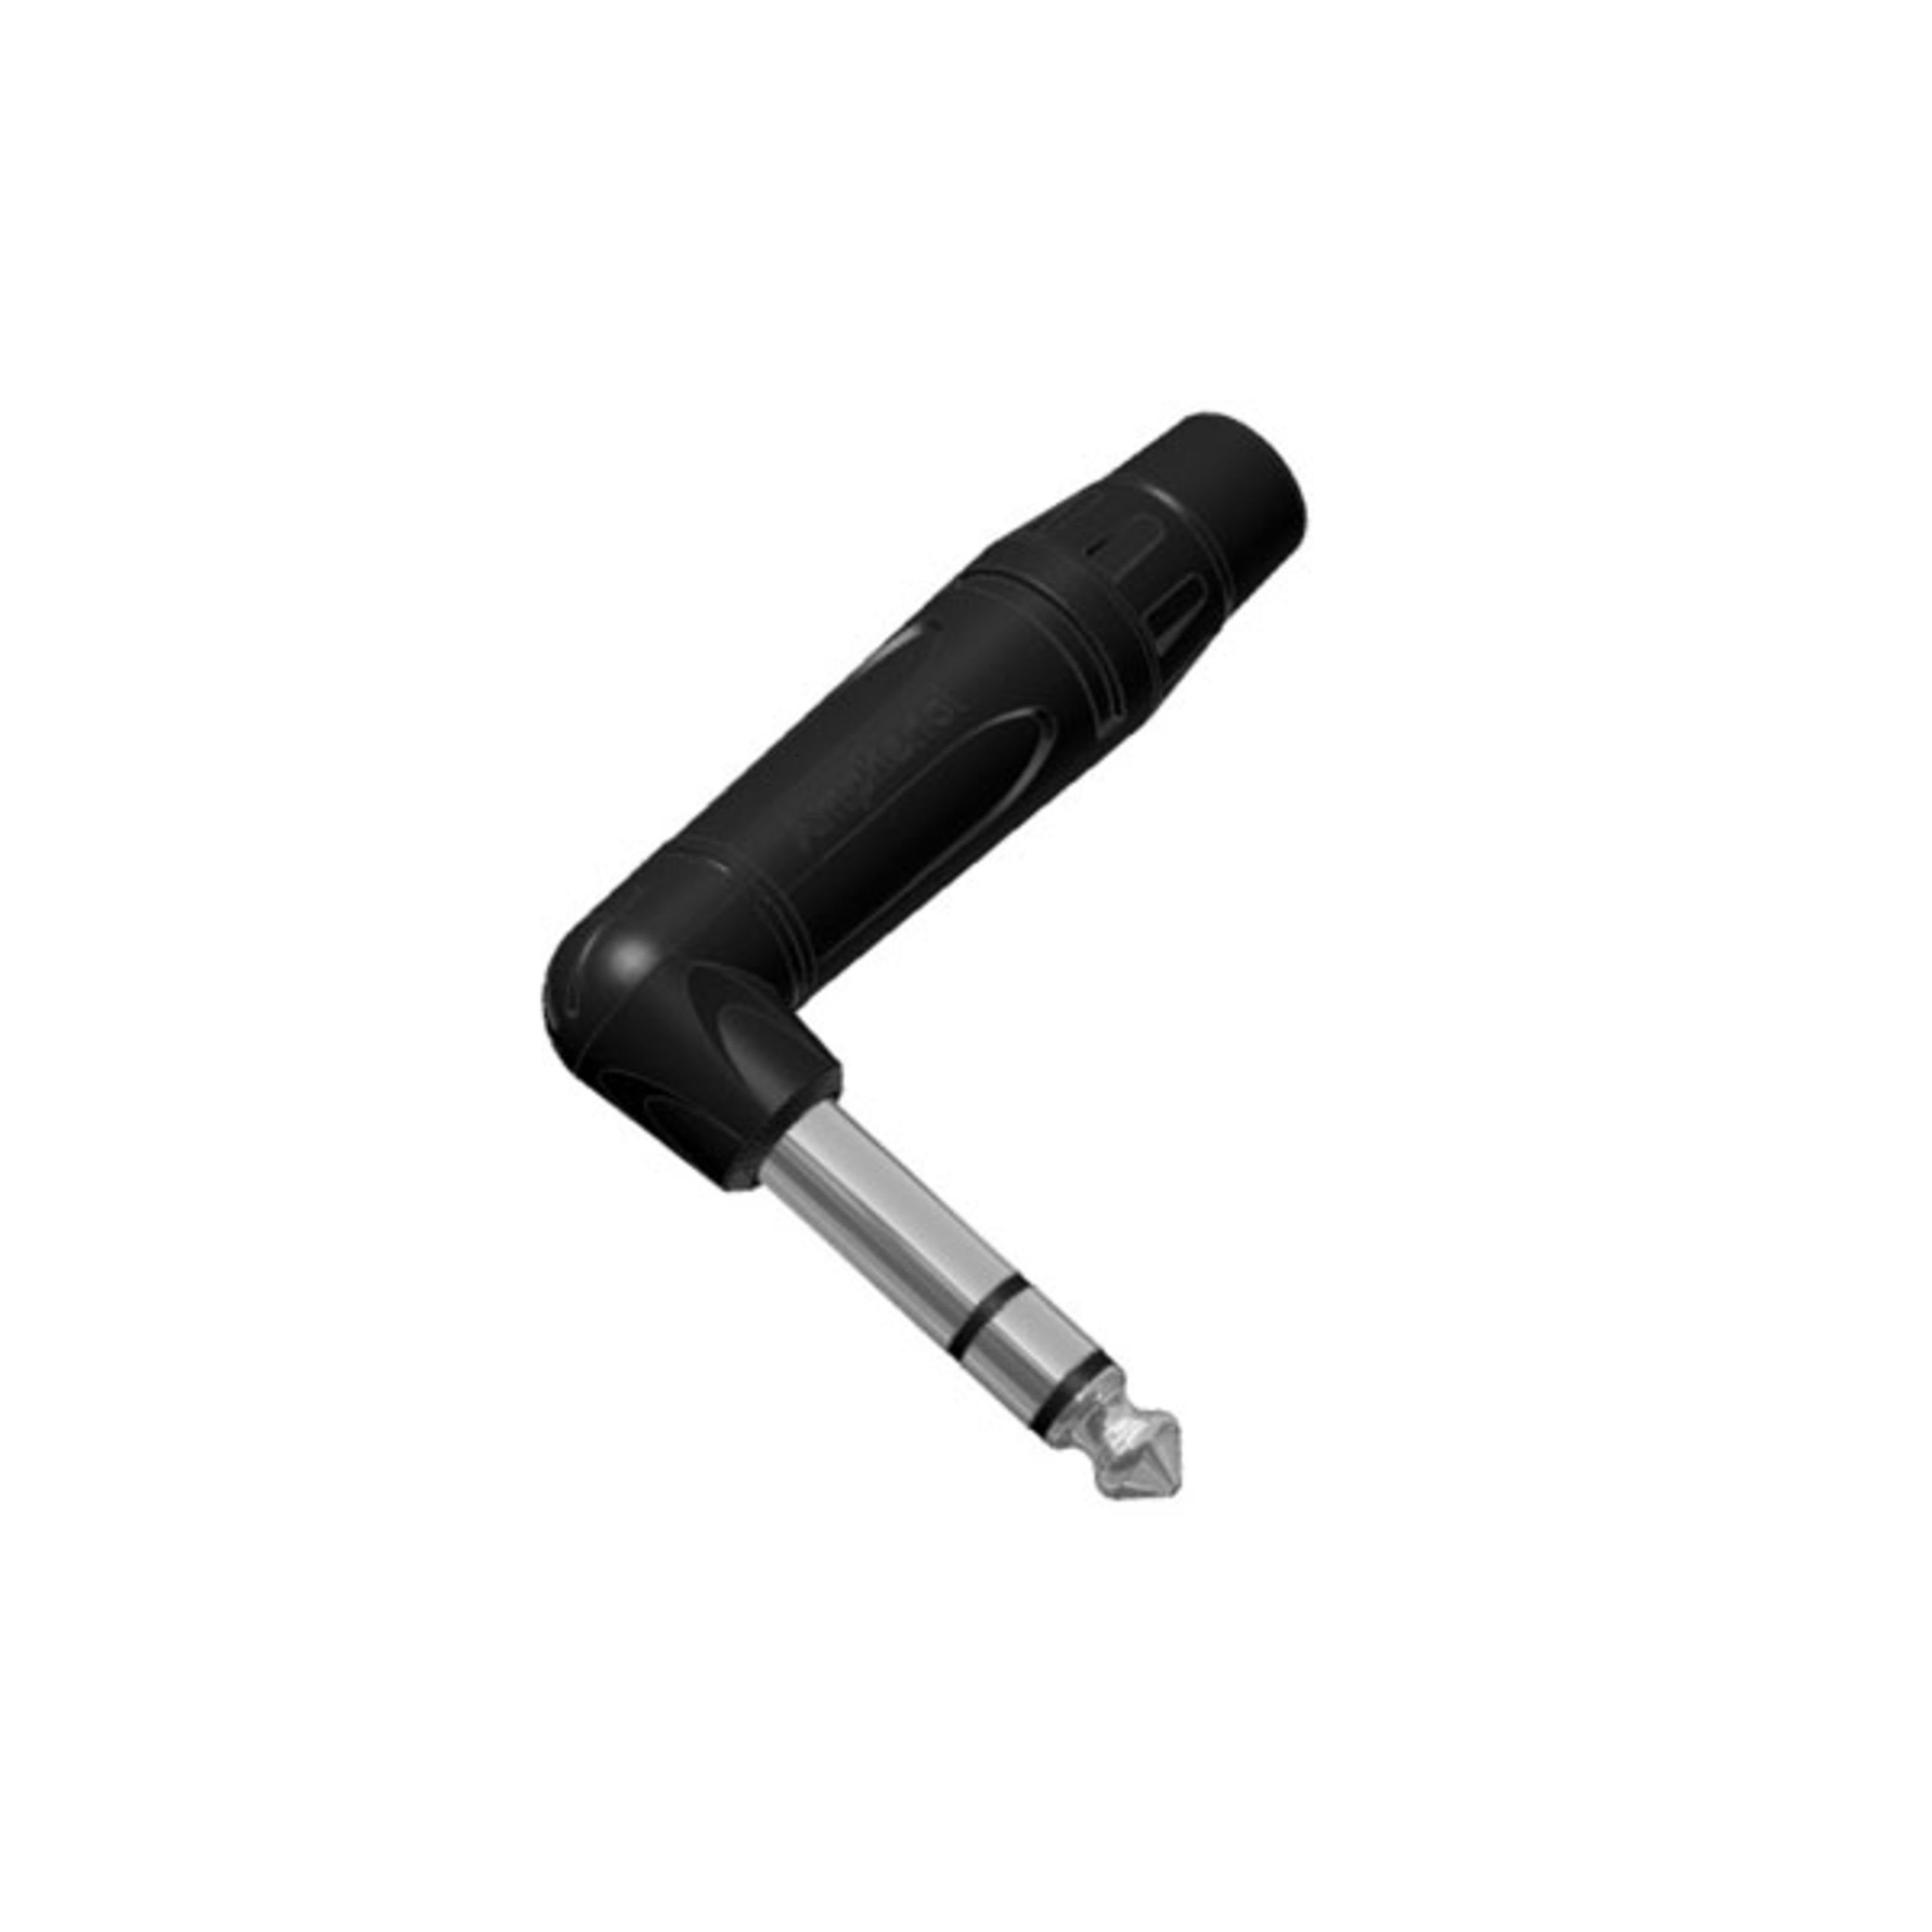 Amphenol Klinkenstecker, (Stecker & Adapter, Kabel-Stecker), ACPS-TB-AU Winkelklinke stereo - Kabel Stecker